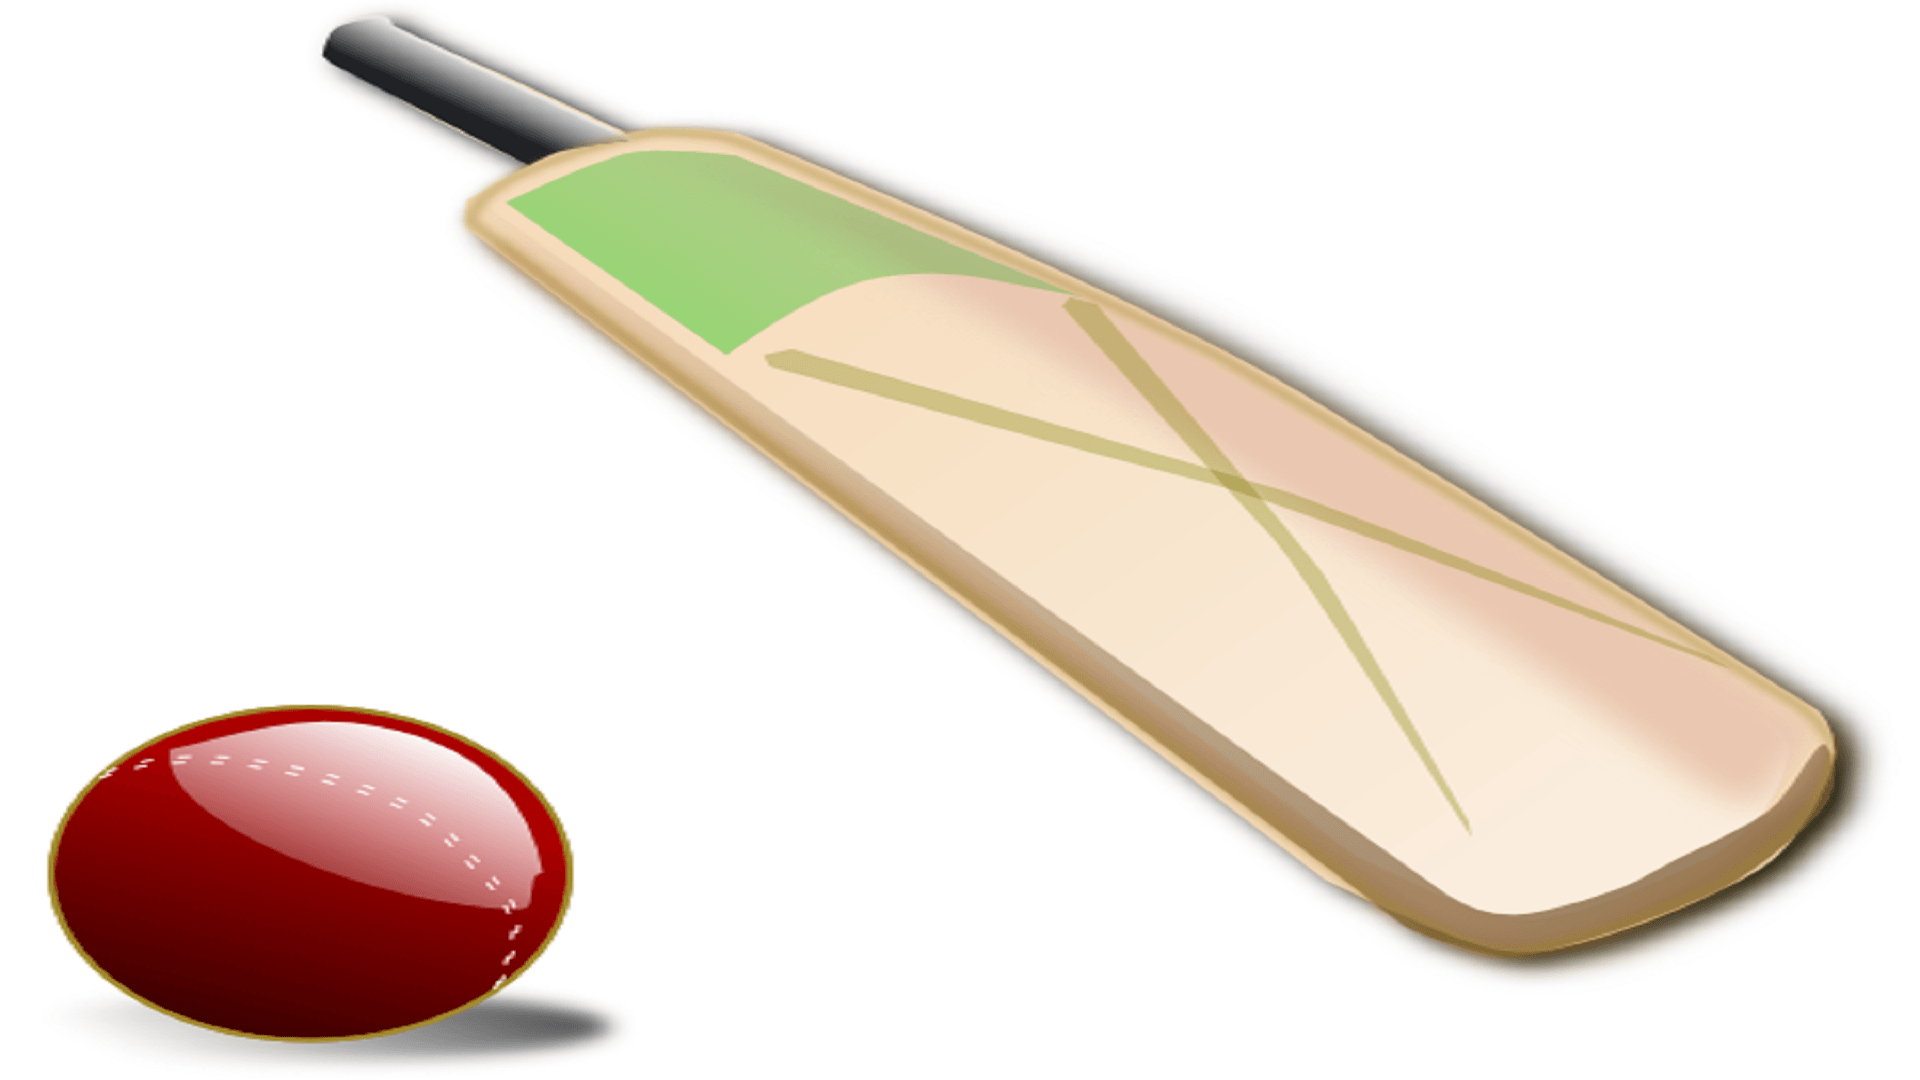 Cricket Bat, Ball, and Its Crucial Factors